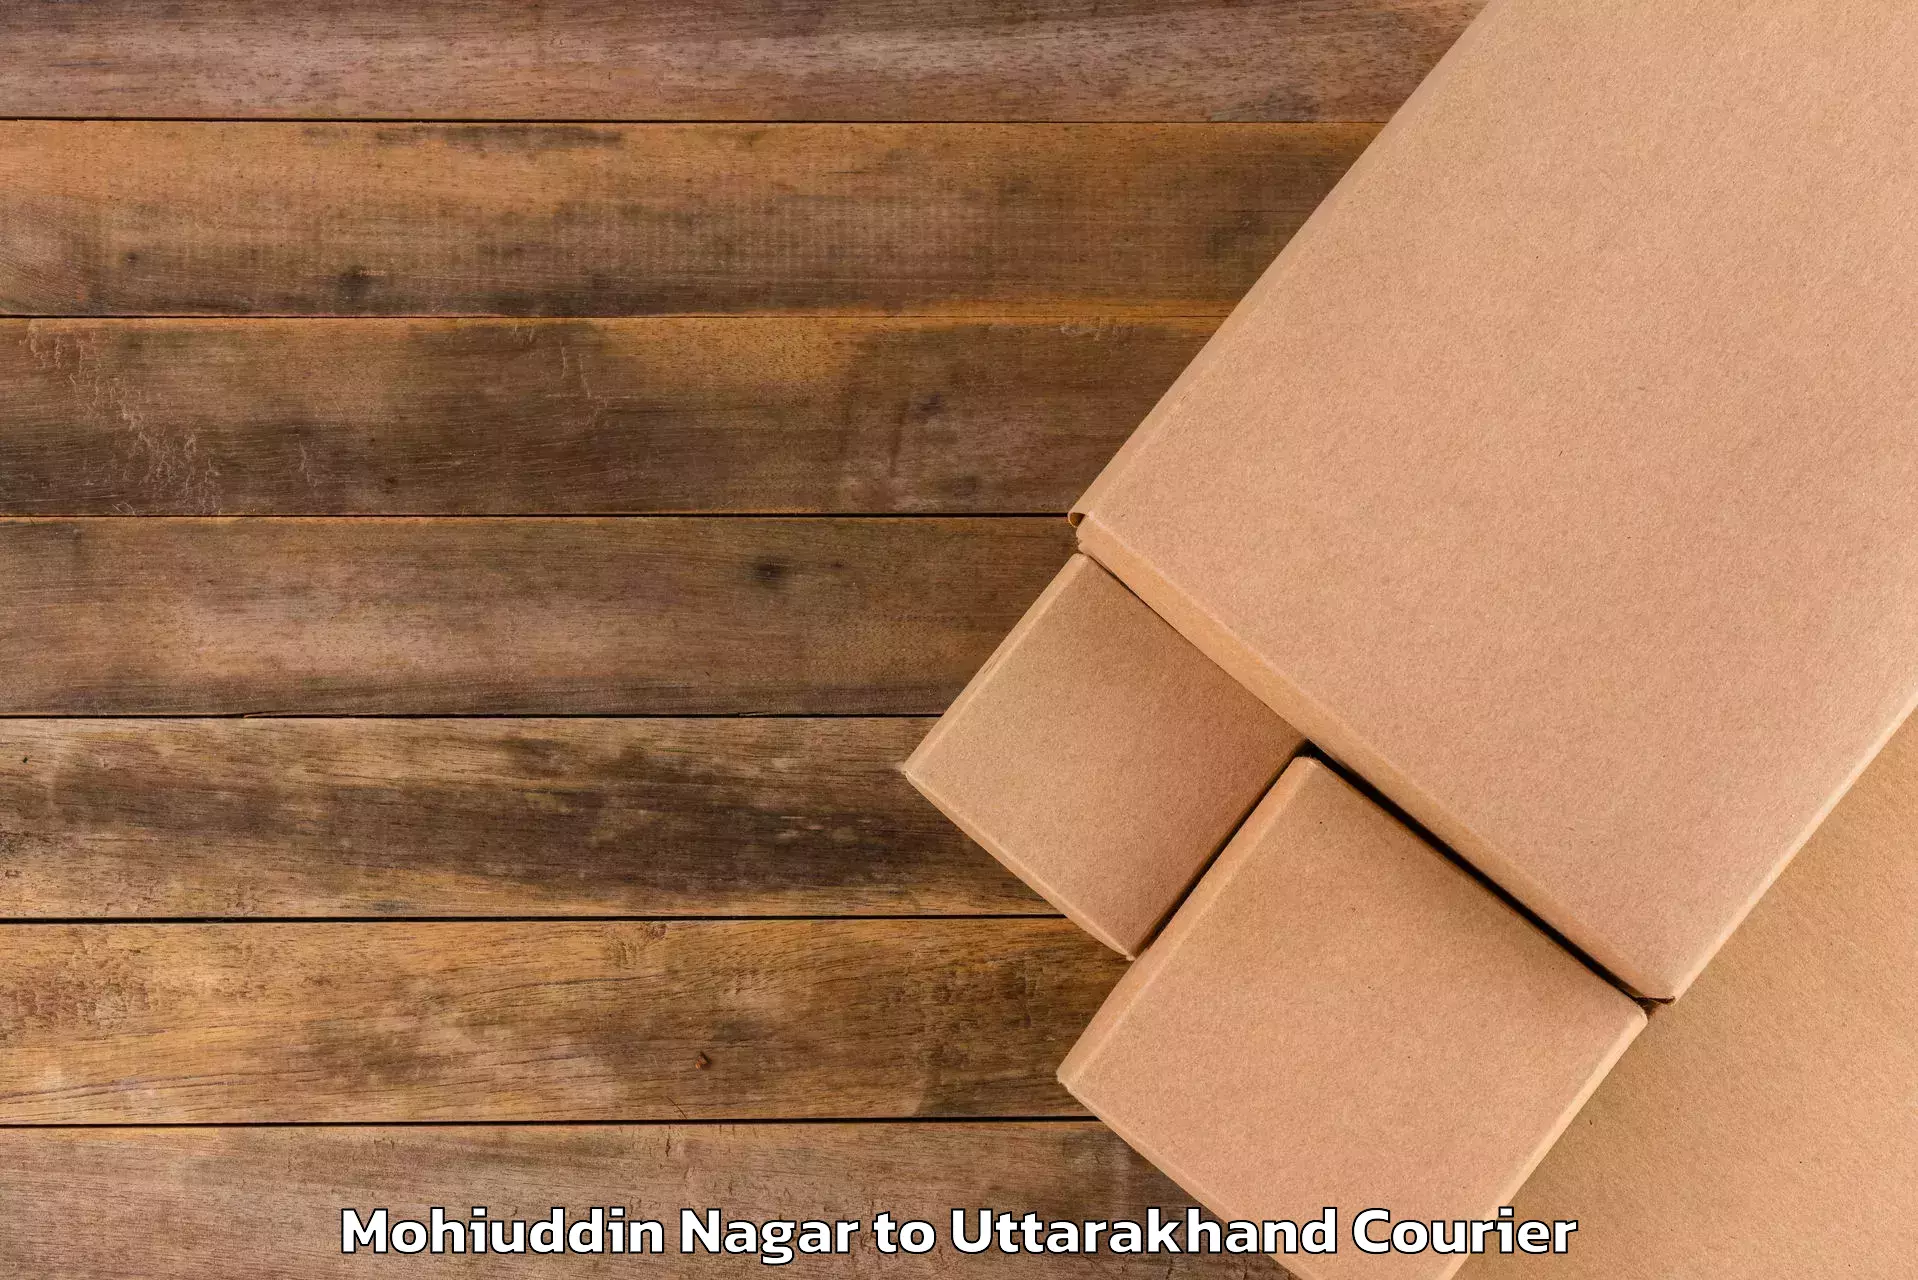 Luggage transport consulting Mohiuddin Nagar to Paithani